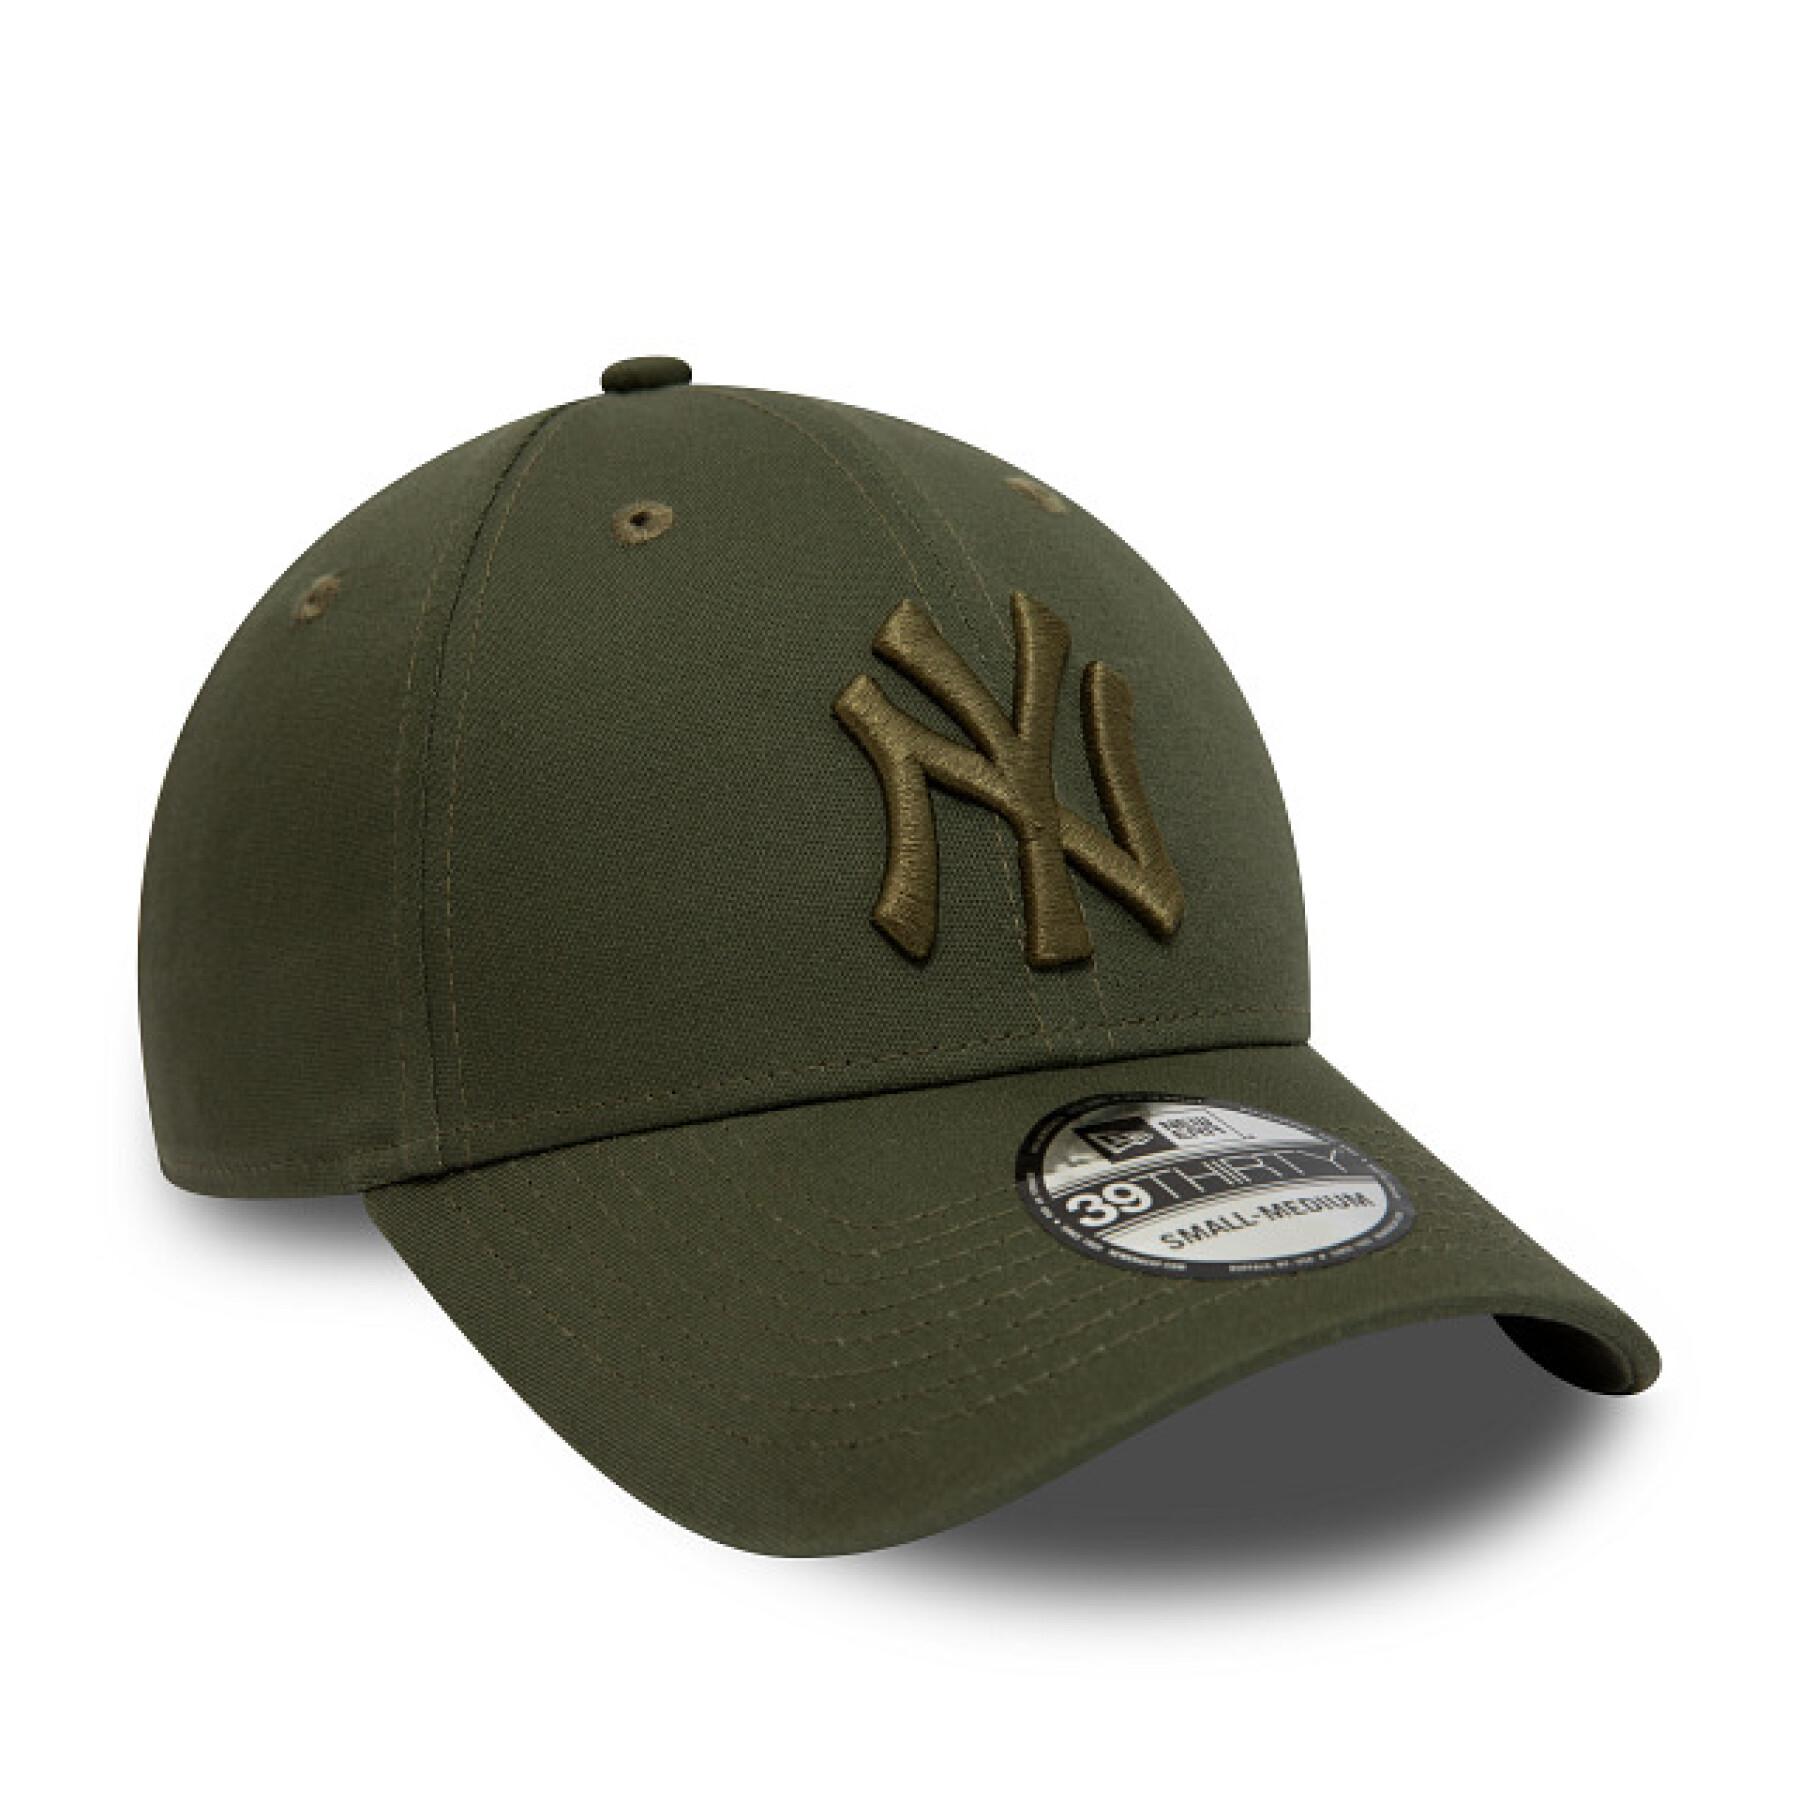 Boné New York Yankees 39THIRTY Essential